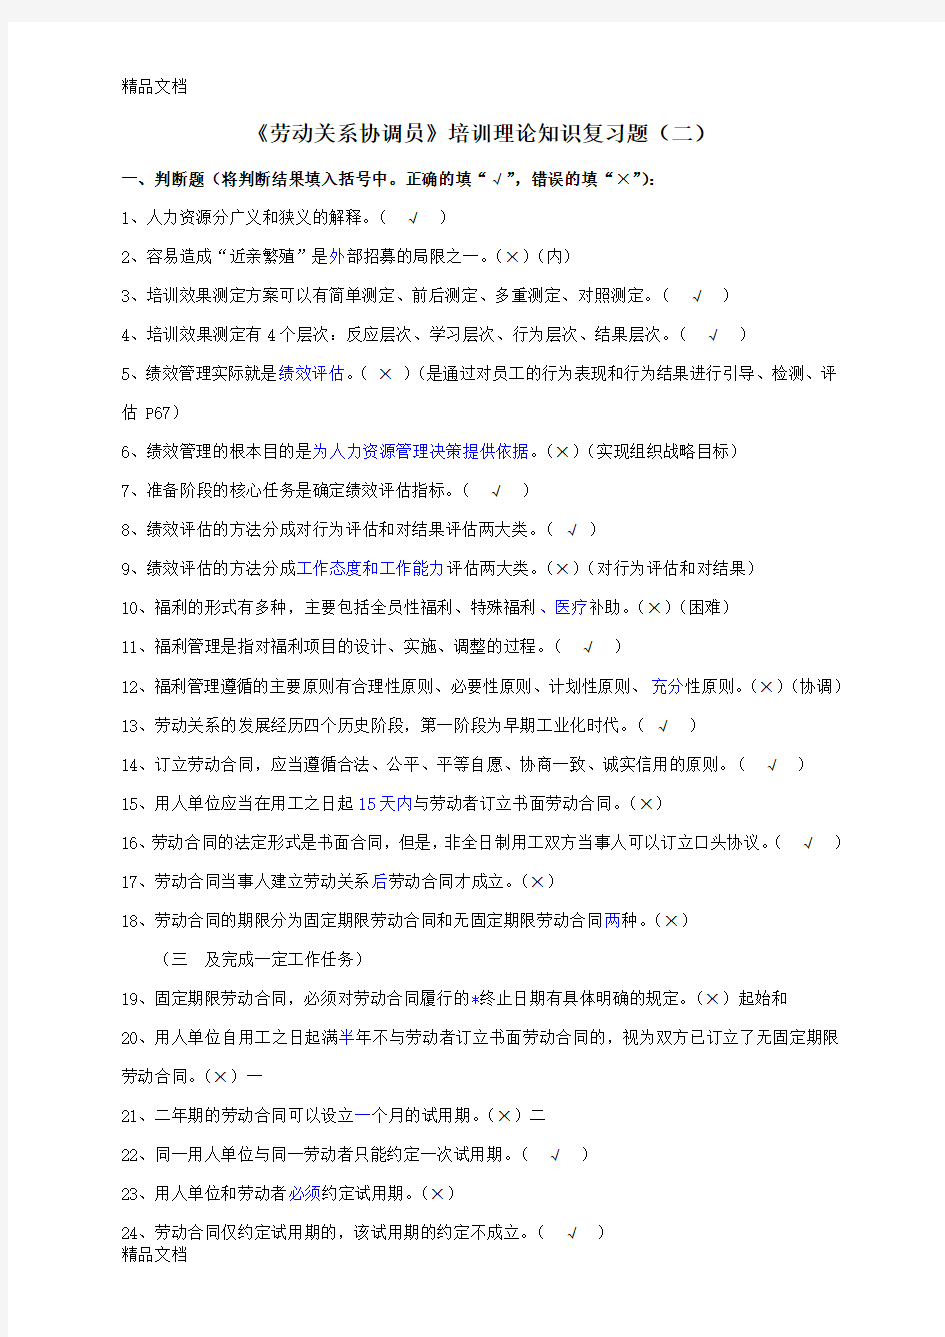 上海劳动关系协调员三级培训理论知识复习题2(汇编)